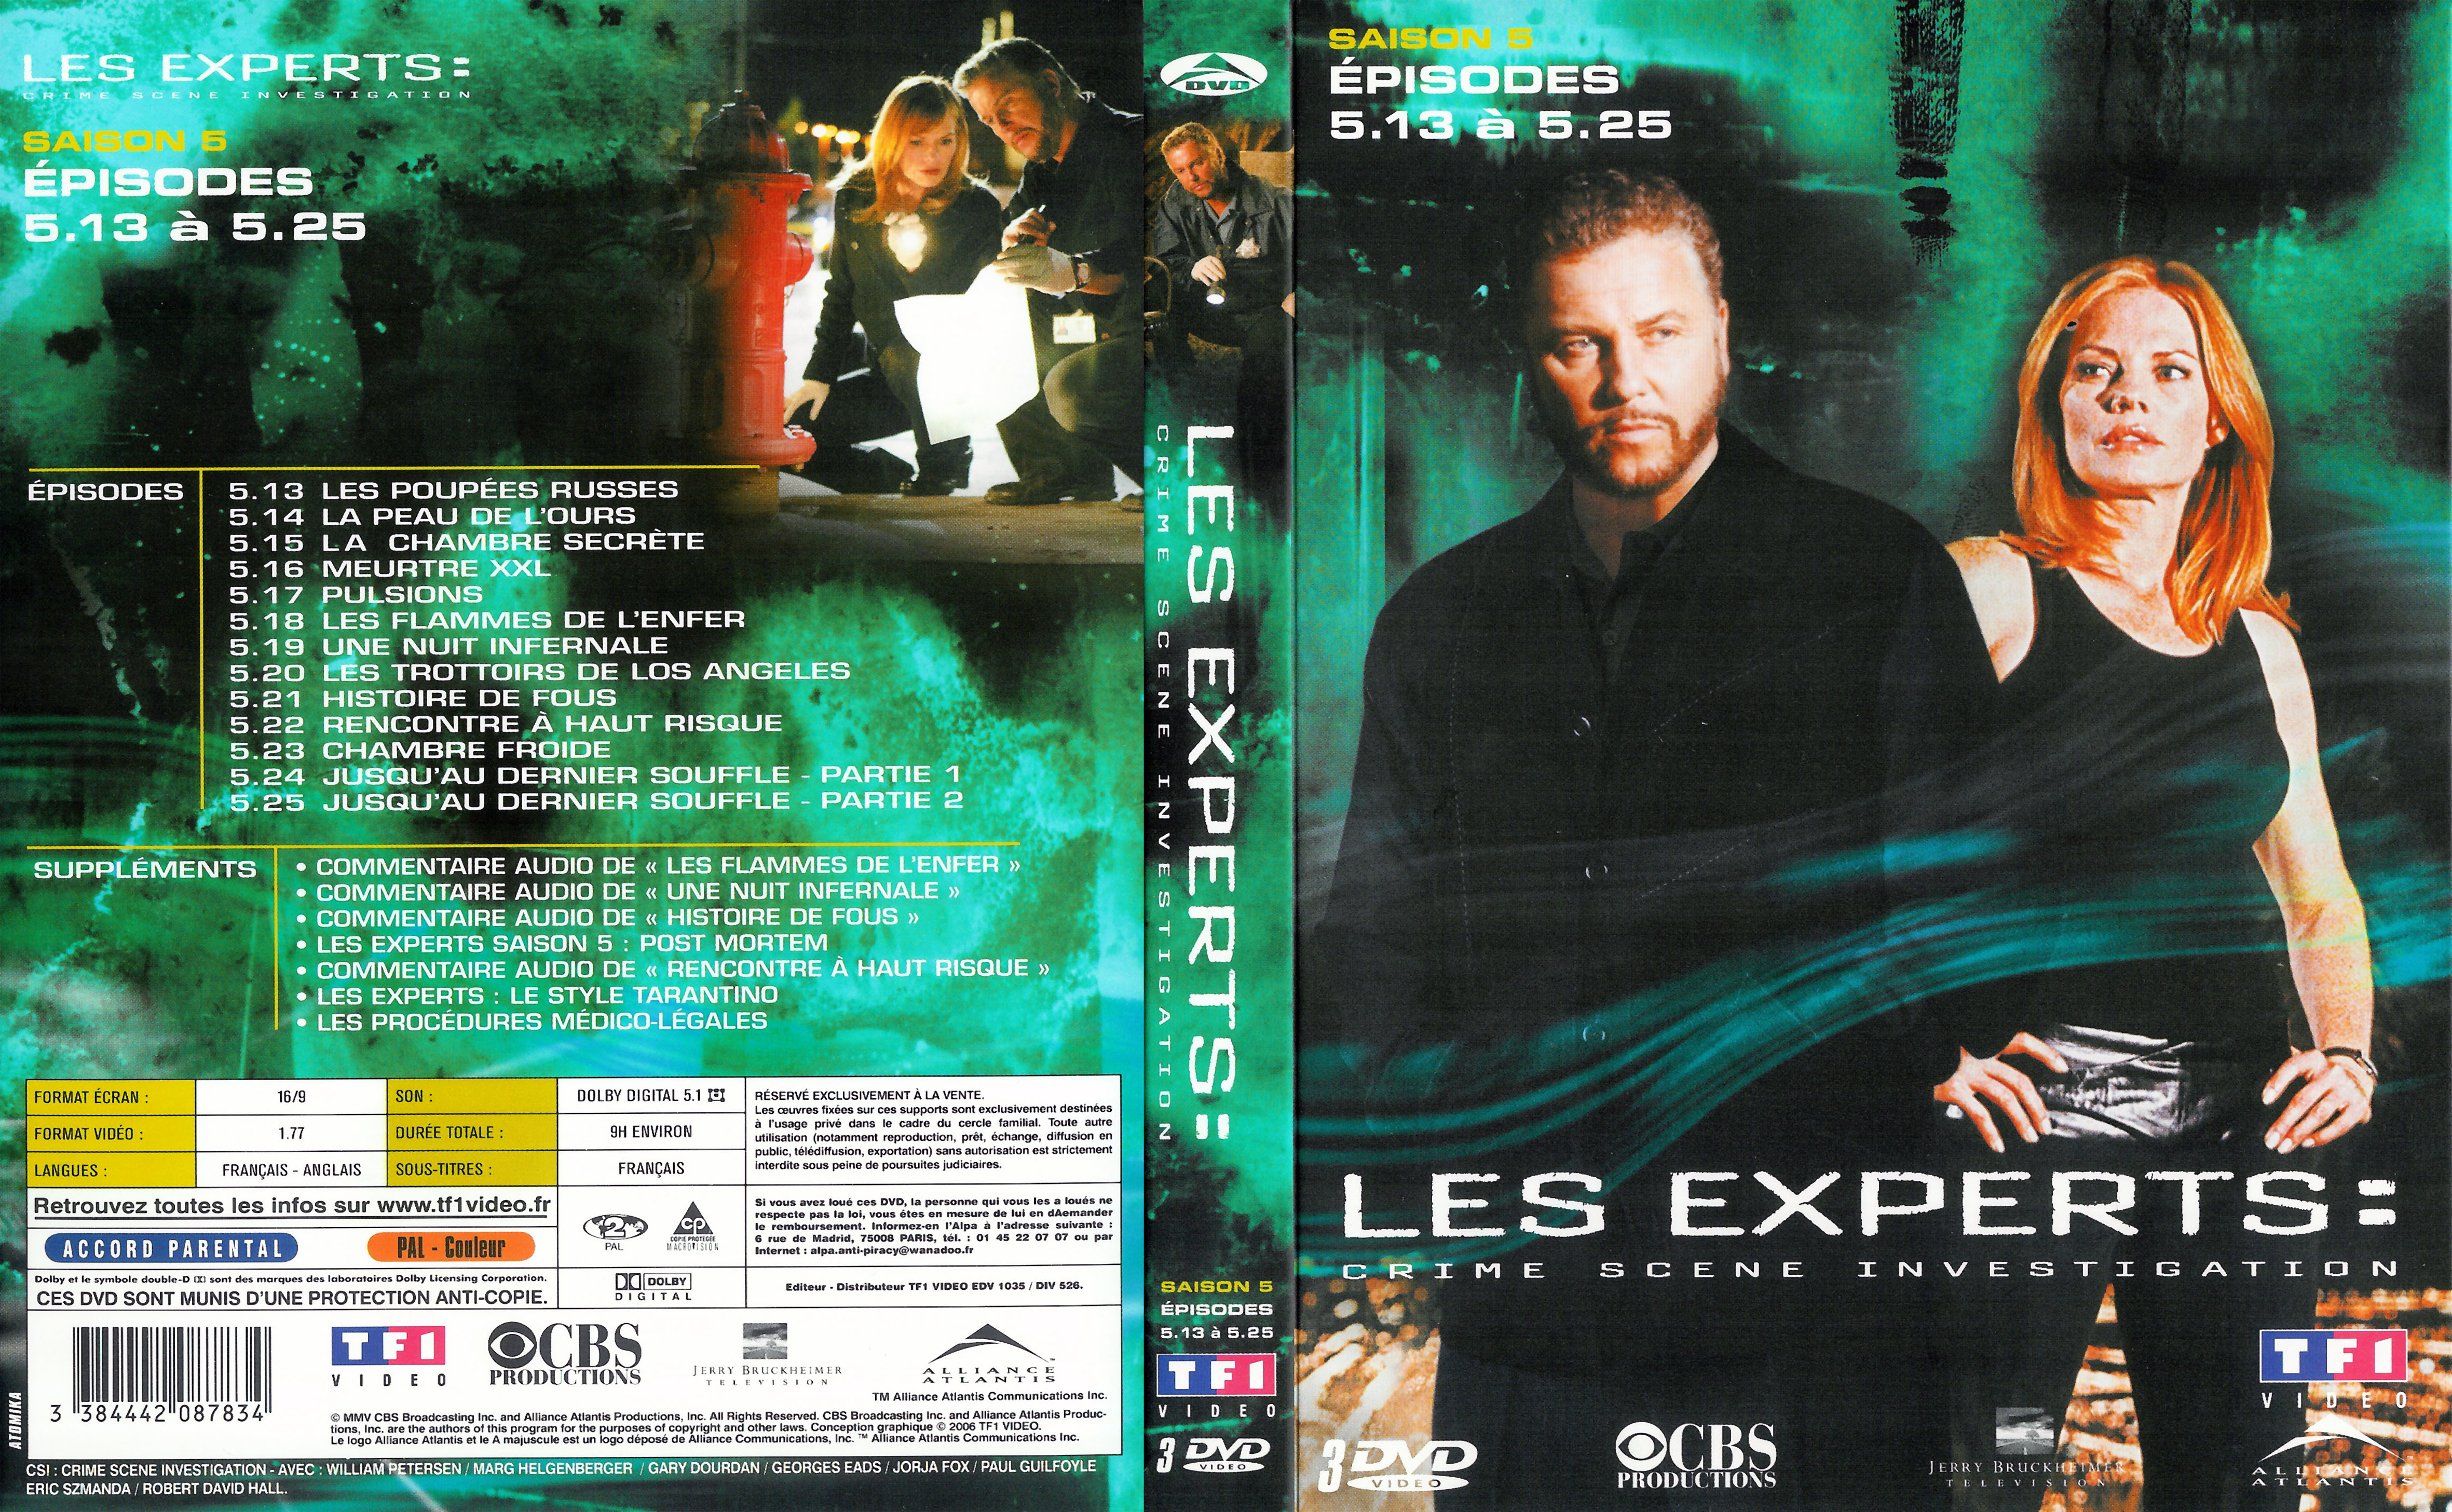 Jaquette DVD Les experts Saison 5 vol 2